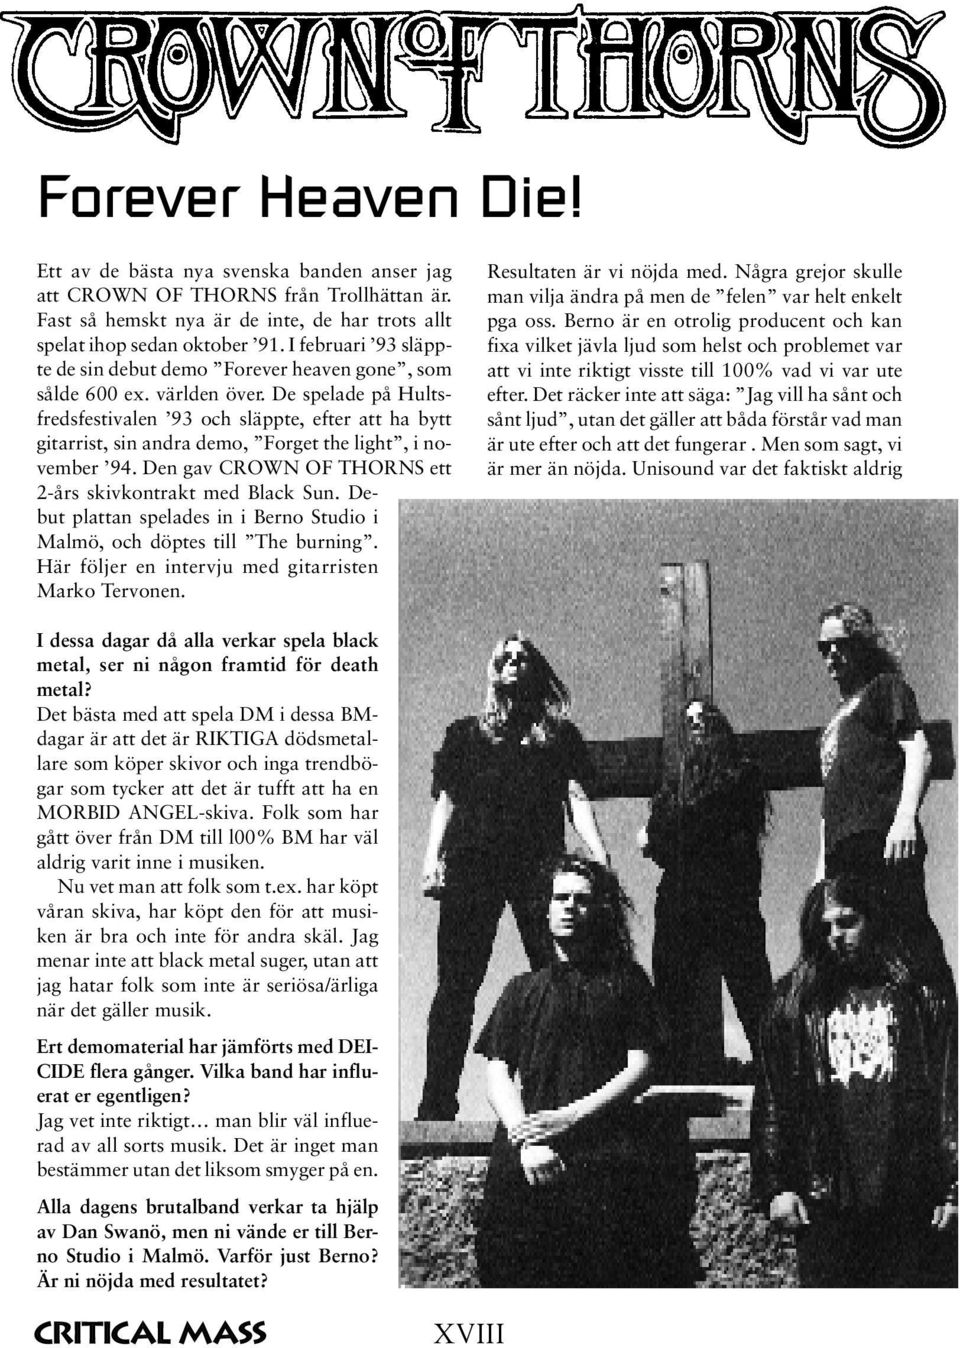 De spelade på Hultsfredsfestivalen 93 och släppte, efter att ha bytt gitarrist, sin andra demo, Forget the light, i november 94. Den gav CROWN OF THORNS ett 2-års skivkontrakt med Black Sun.